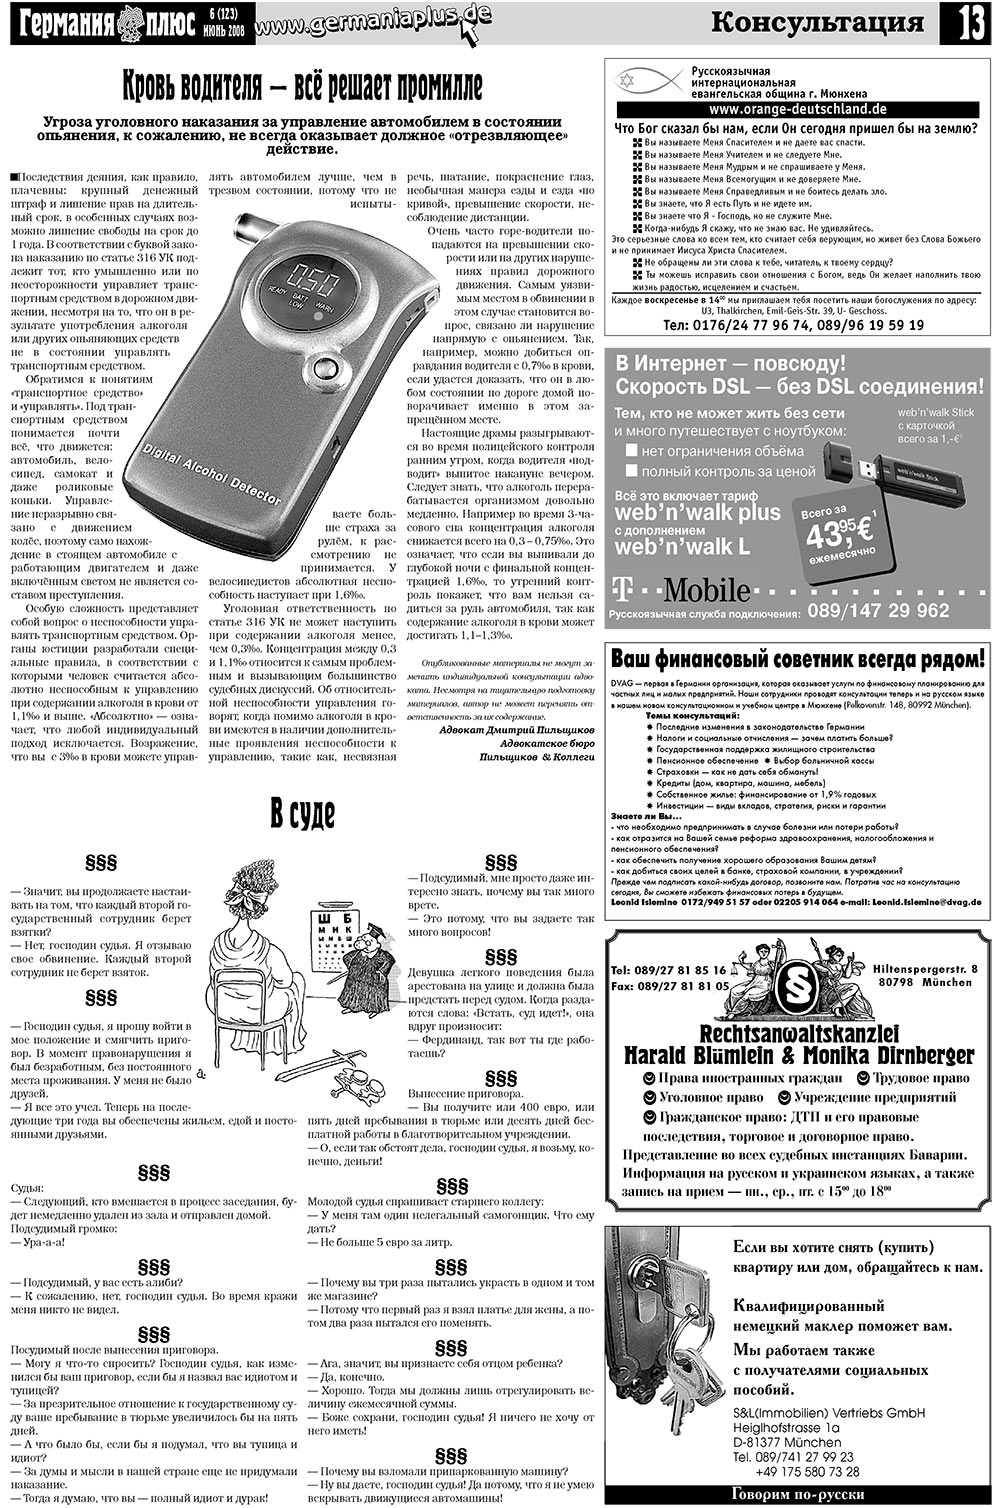 Германия плюс (газета). 2008 год, номер 6, стр. 17